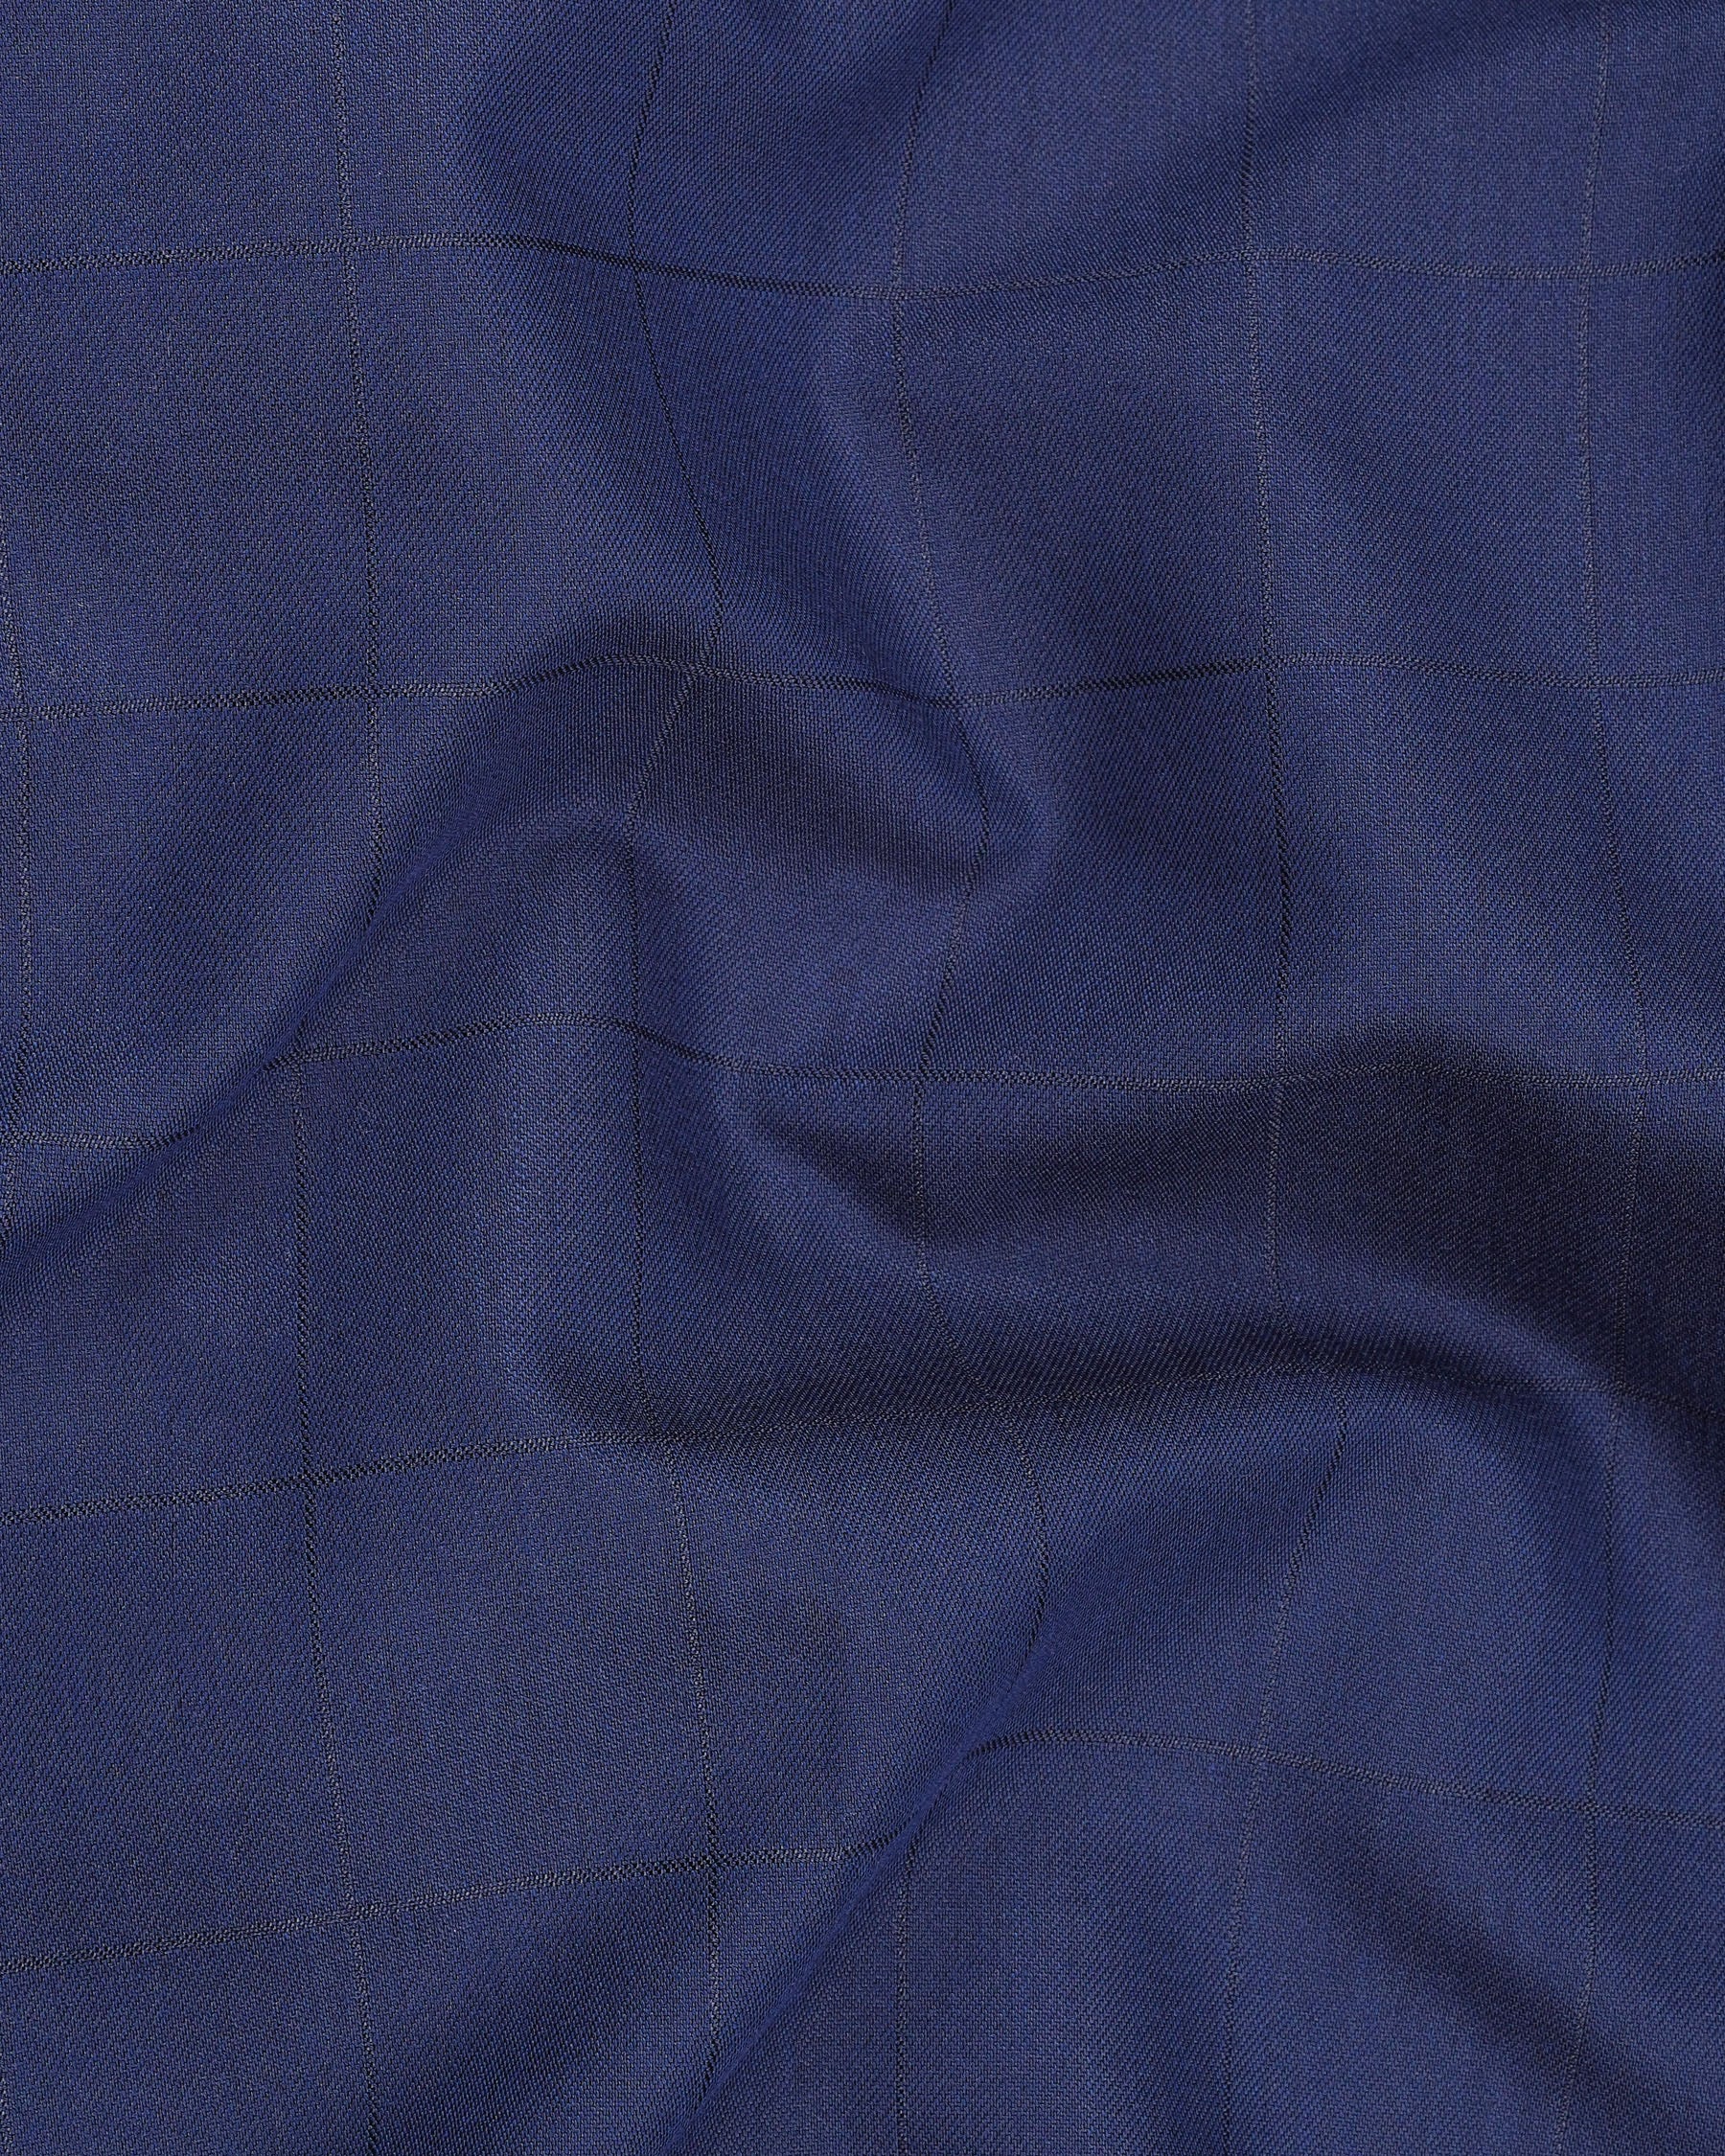 Rhino Blue Cross Placket Bandhgala Suit